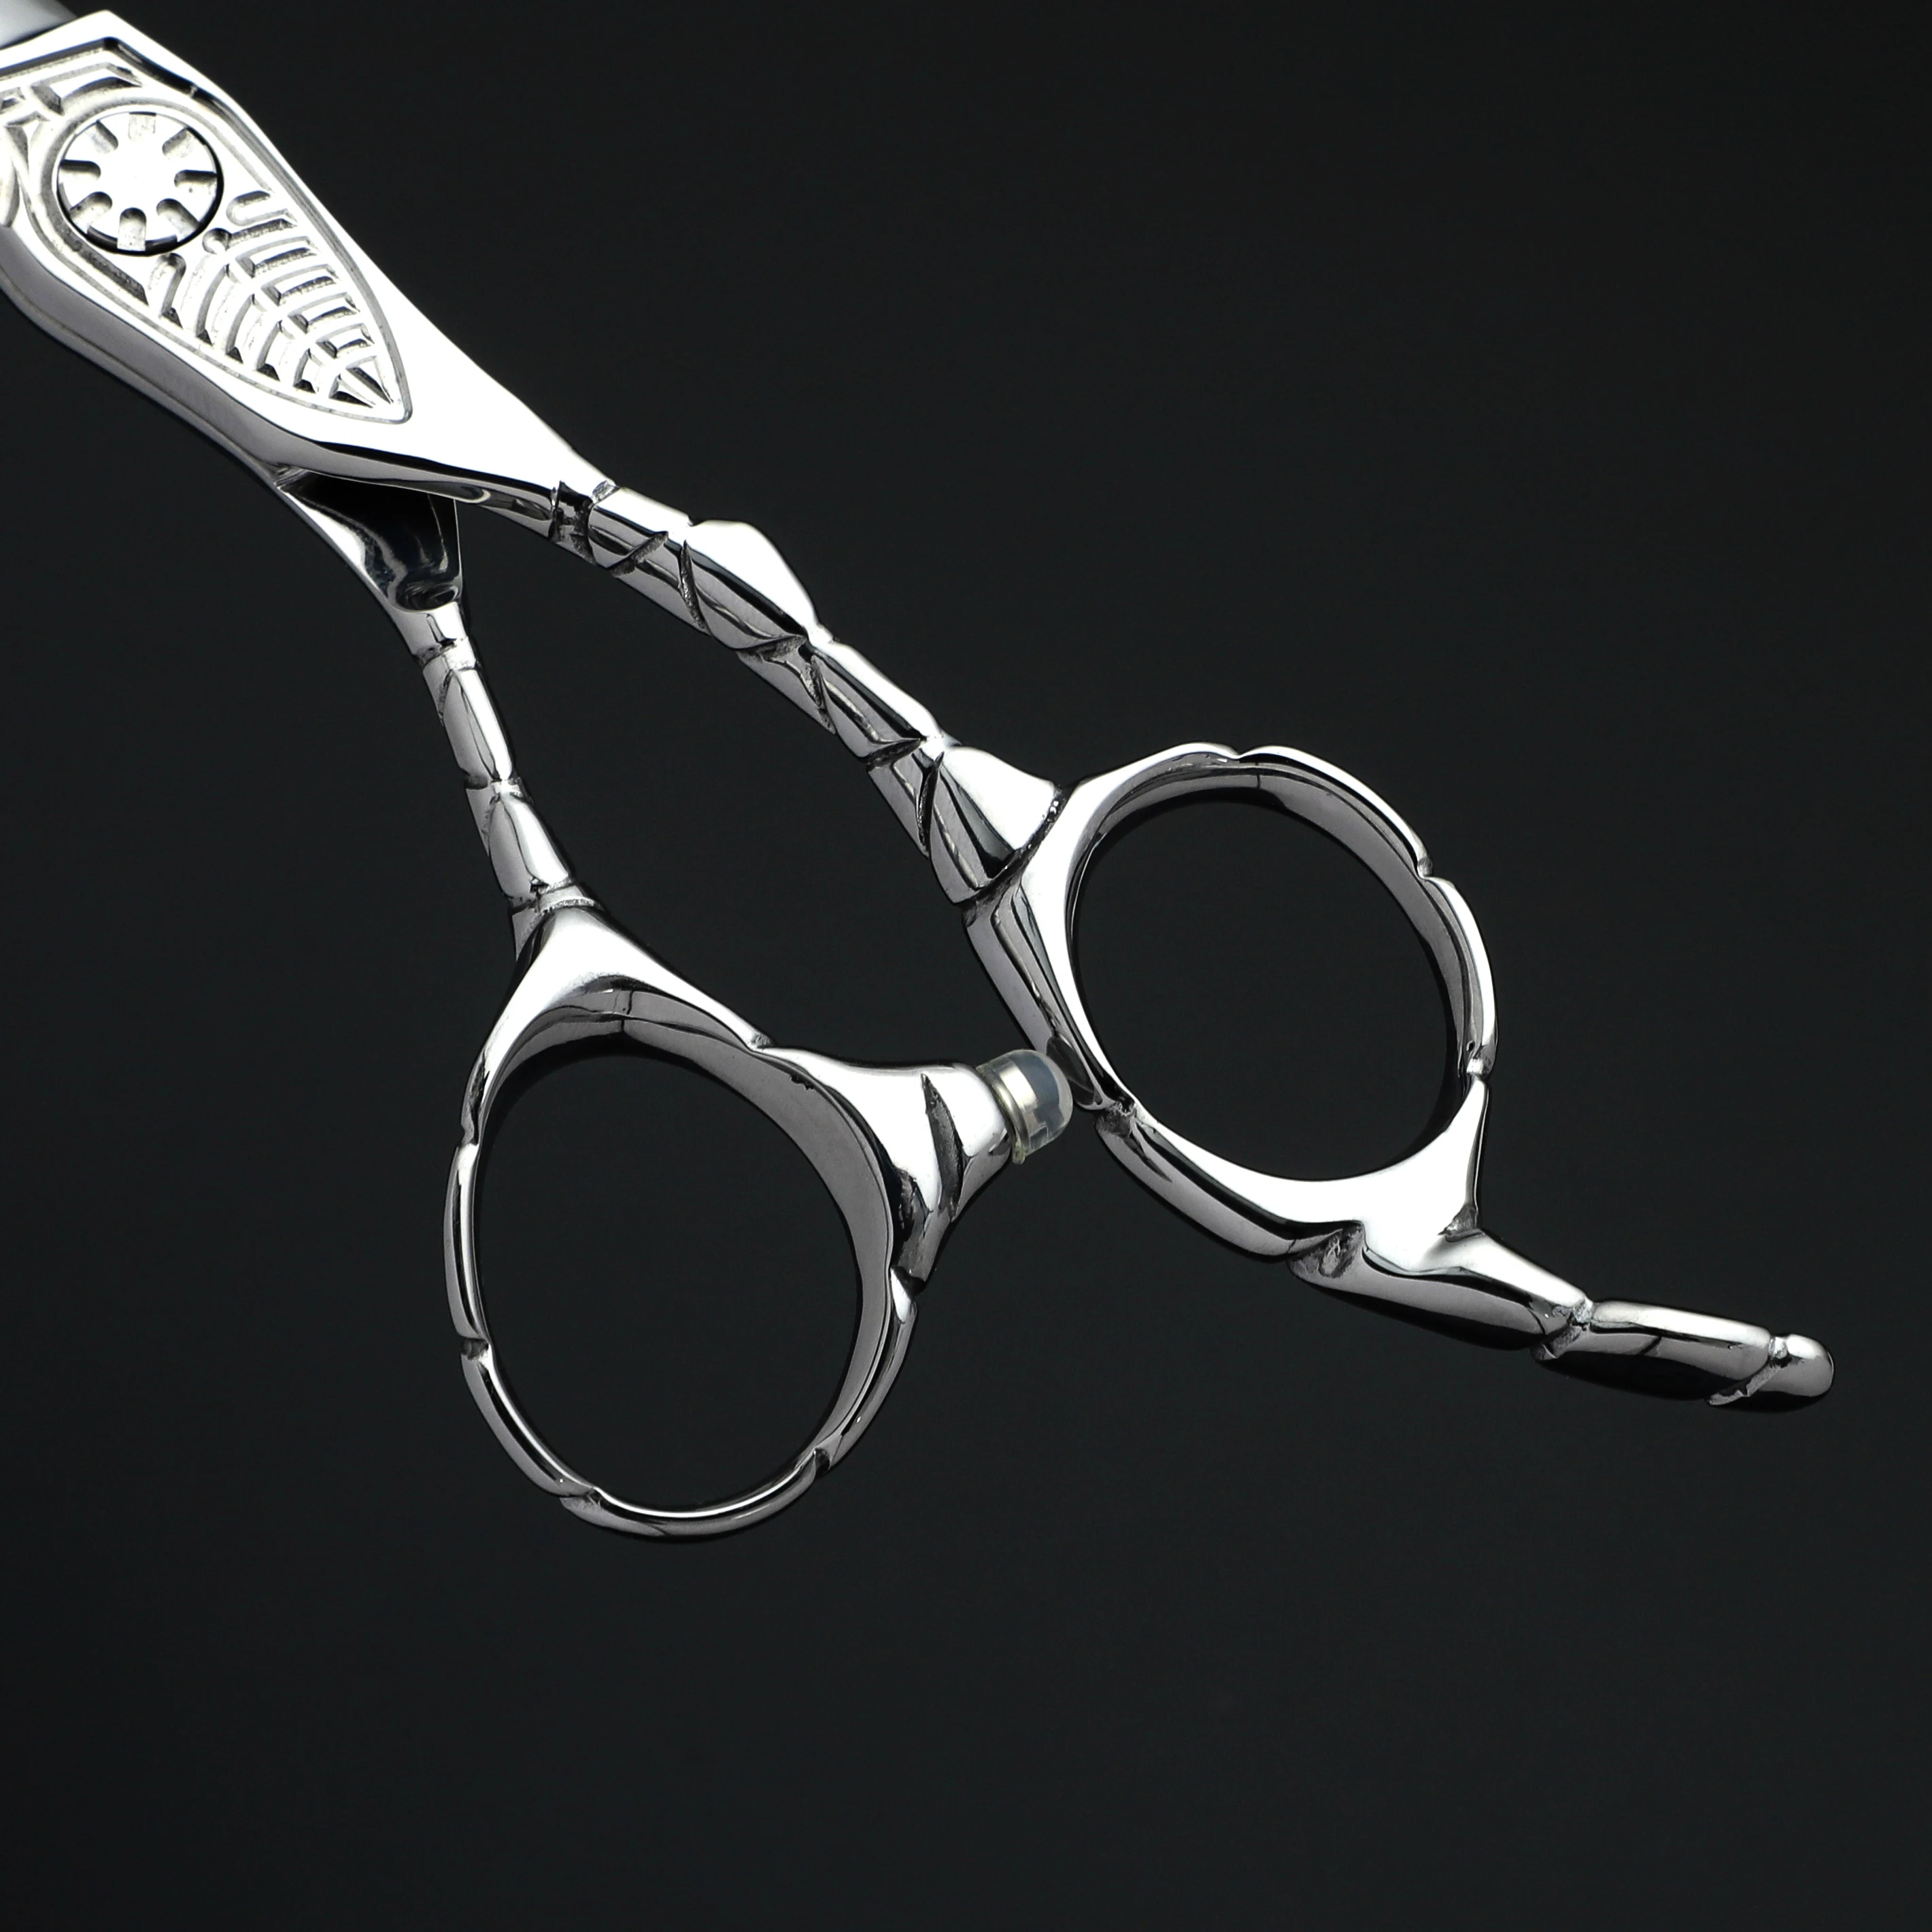 Новые парикмахерские ножницы MIZUTANI professional 6.0 6.5 дюймов из стали VG10 Парикмахерская Профессиональные парикмахерские ножницы ножницы для волос